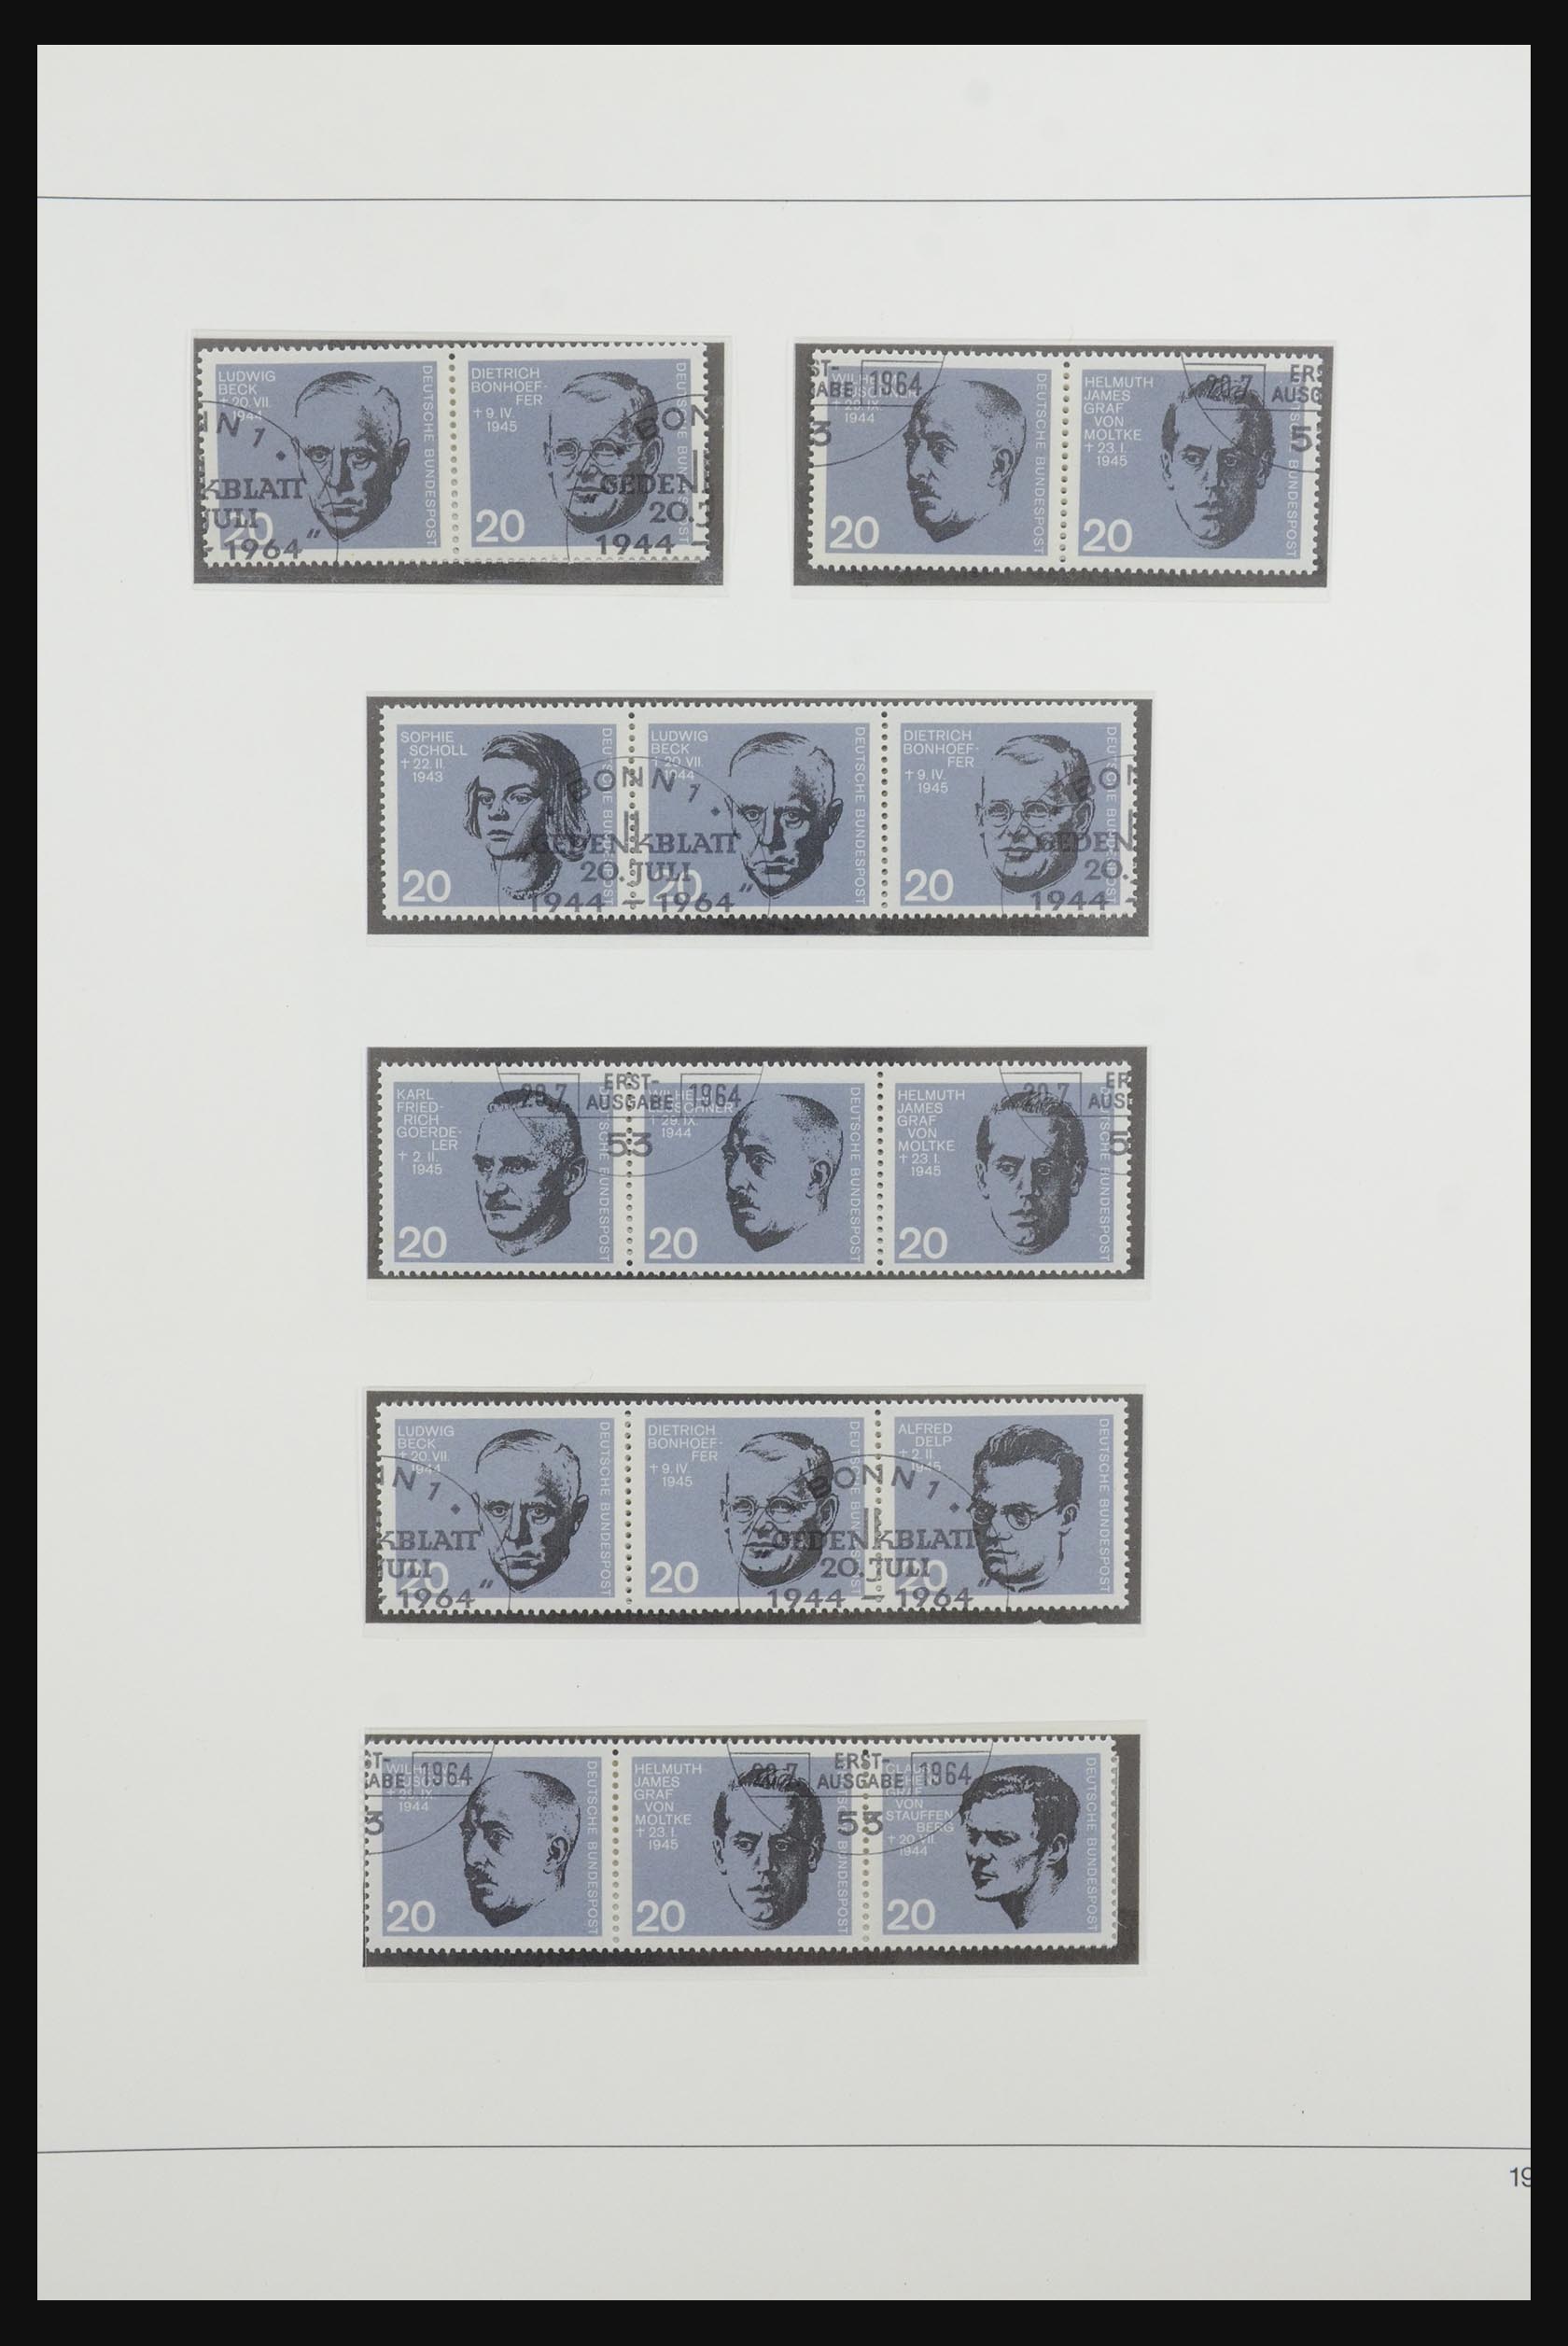 31842 026 - 31842 Bundespost combinaties 1951-2003.